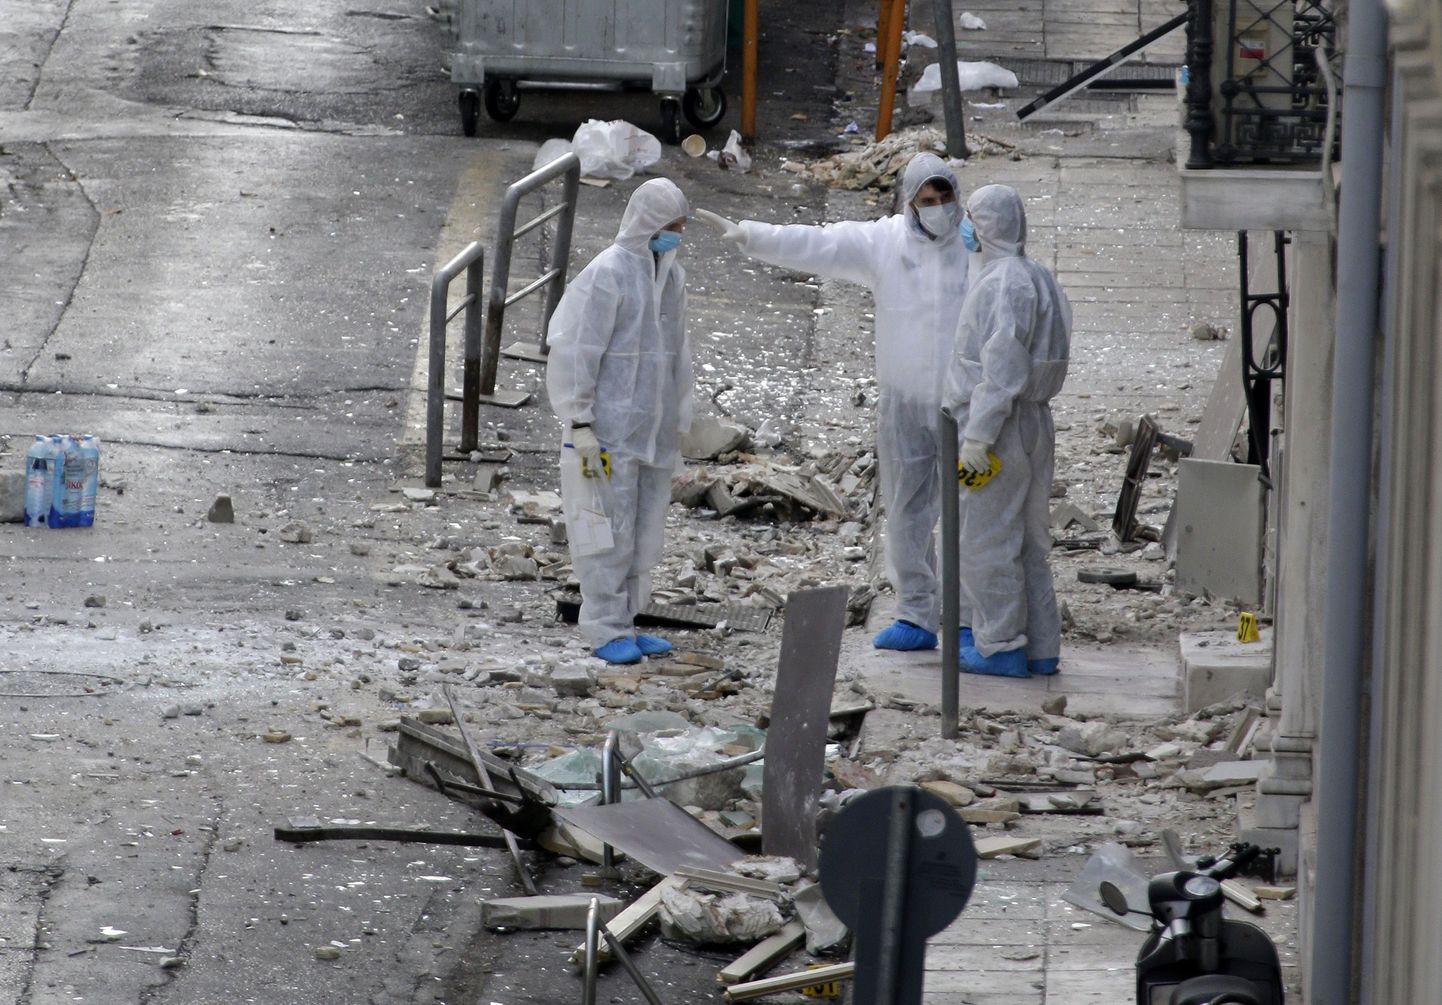 Uurijad Ateenas plahvatuse toimumispaiga juures.